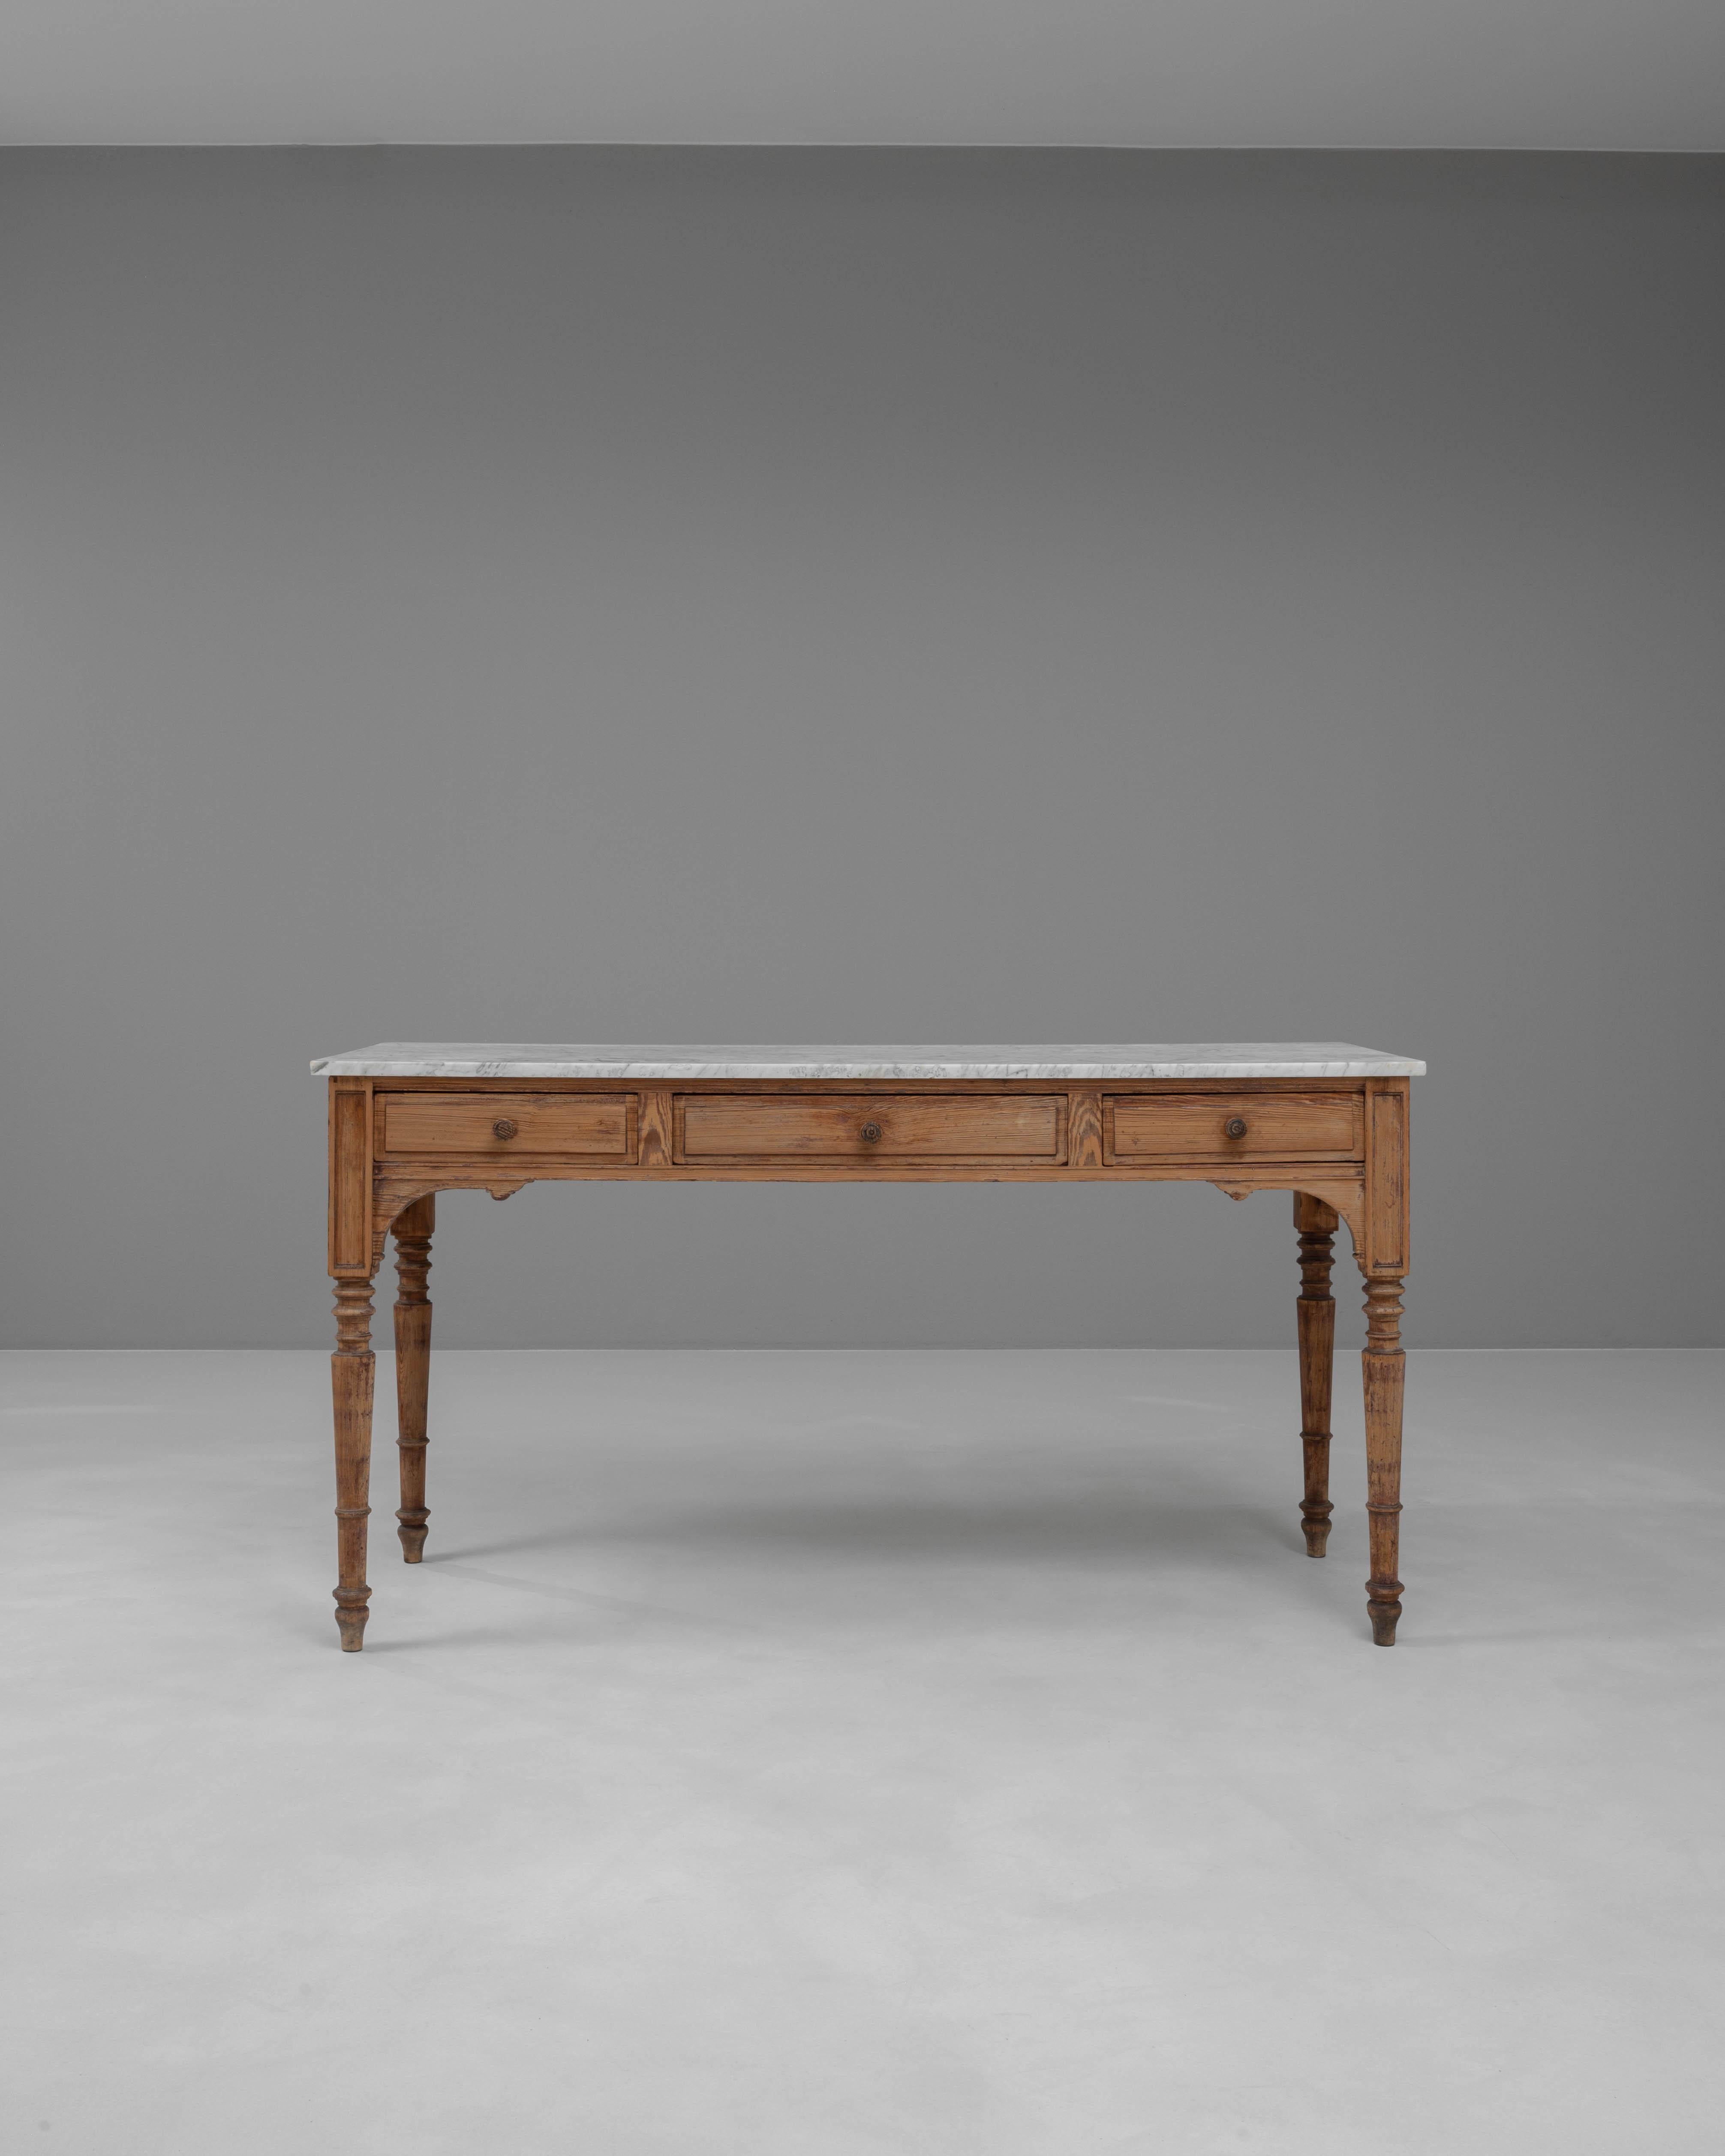 Cette table console française en bois du XIXe siècle respire l'élégance classique grâce à son design magnifiquement travaillé et à ses caractéristiques pratiques. Le cadre en bois robuste et sculpté est complété par un plateau en marbre immaculé,